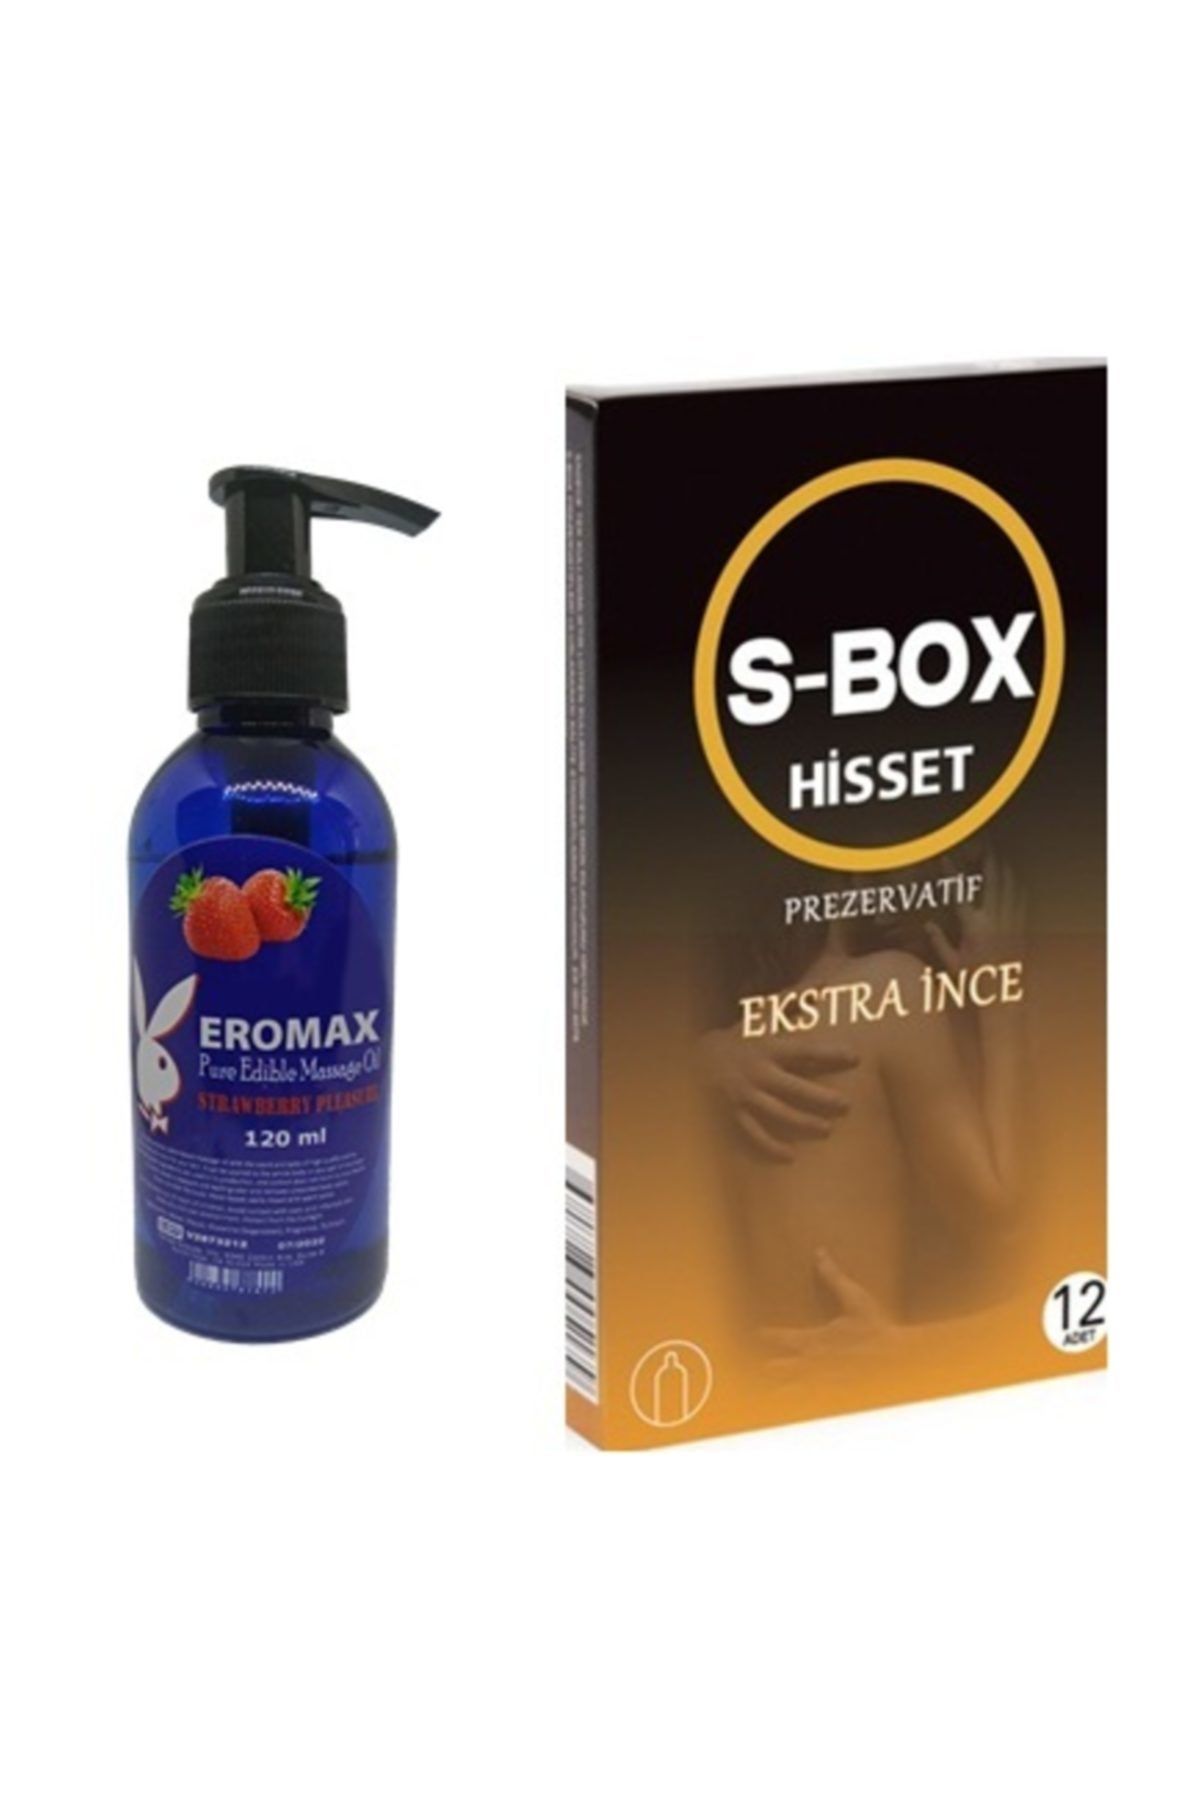 Eromax Çilek Aromalı Masaj Yağı Kayganlaştırıcı Yağ + Ekstra Ince Prezervatif 1 Kutu